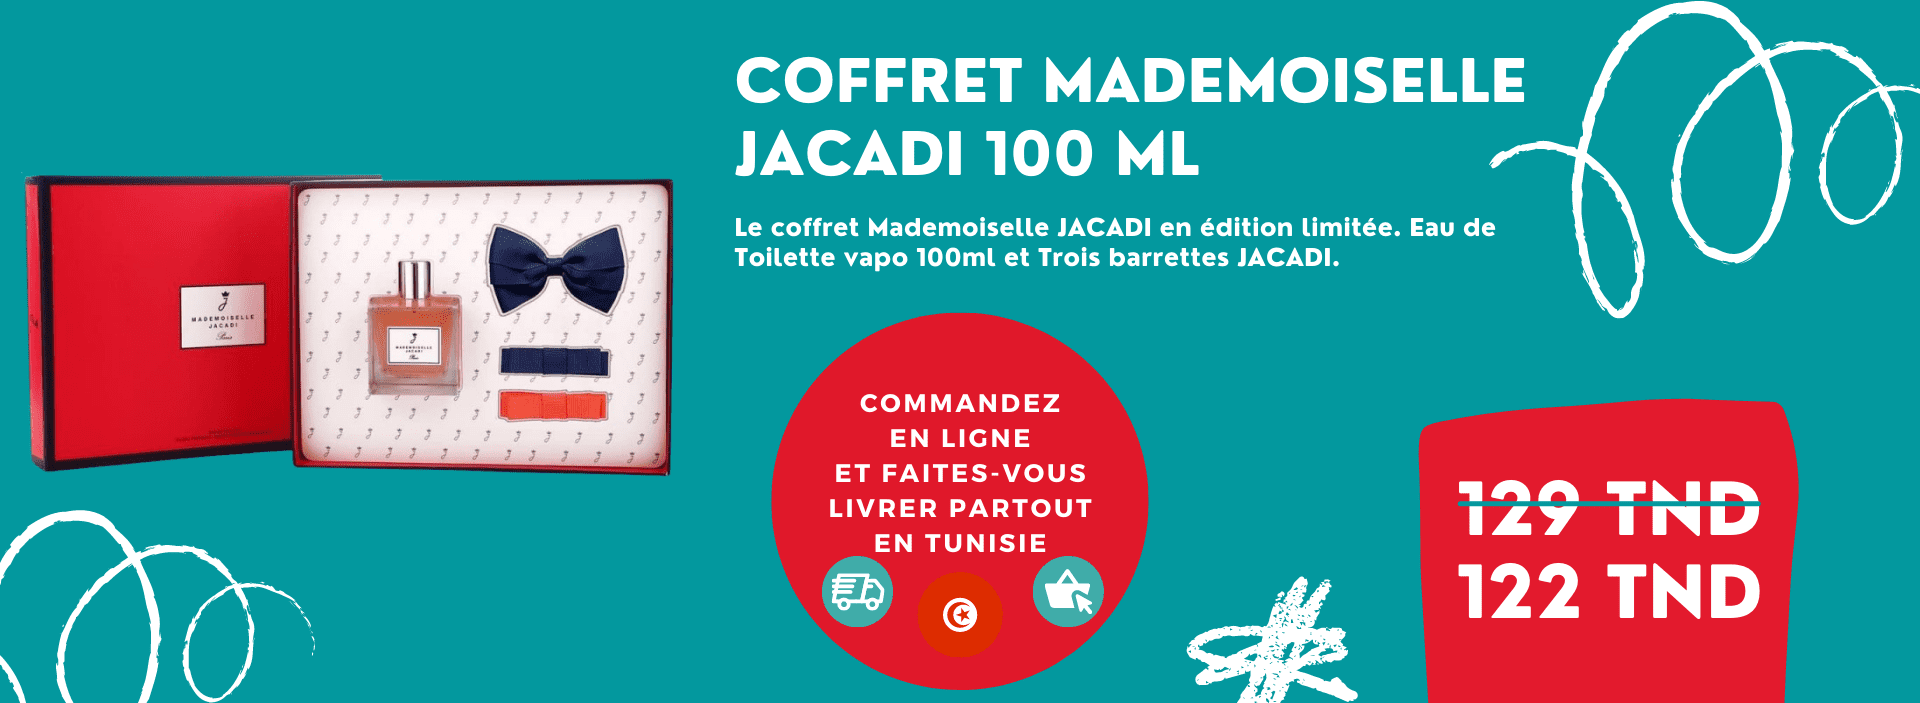 SLIDER_Coffret Mademoiselle Jacadi 100 ML